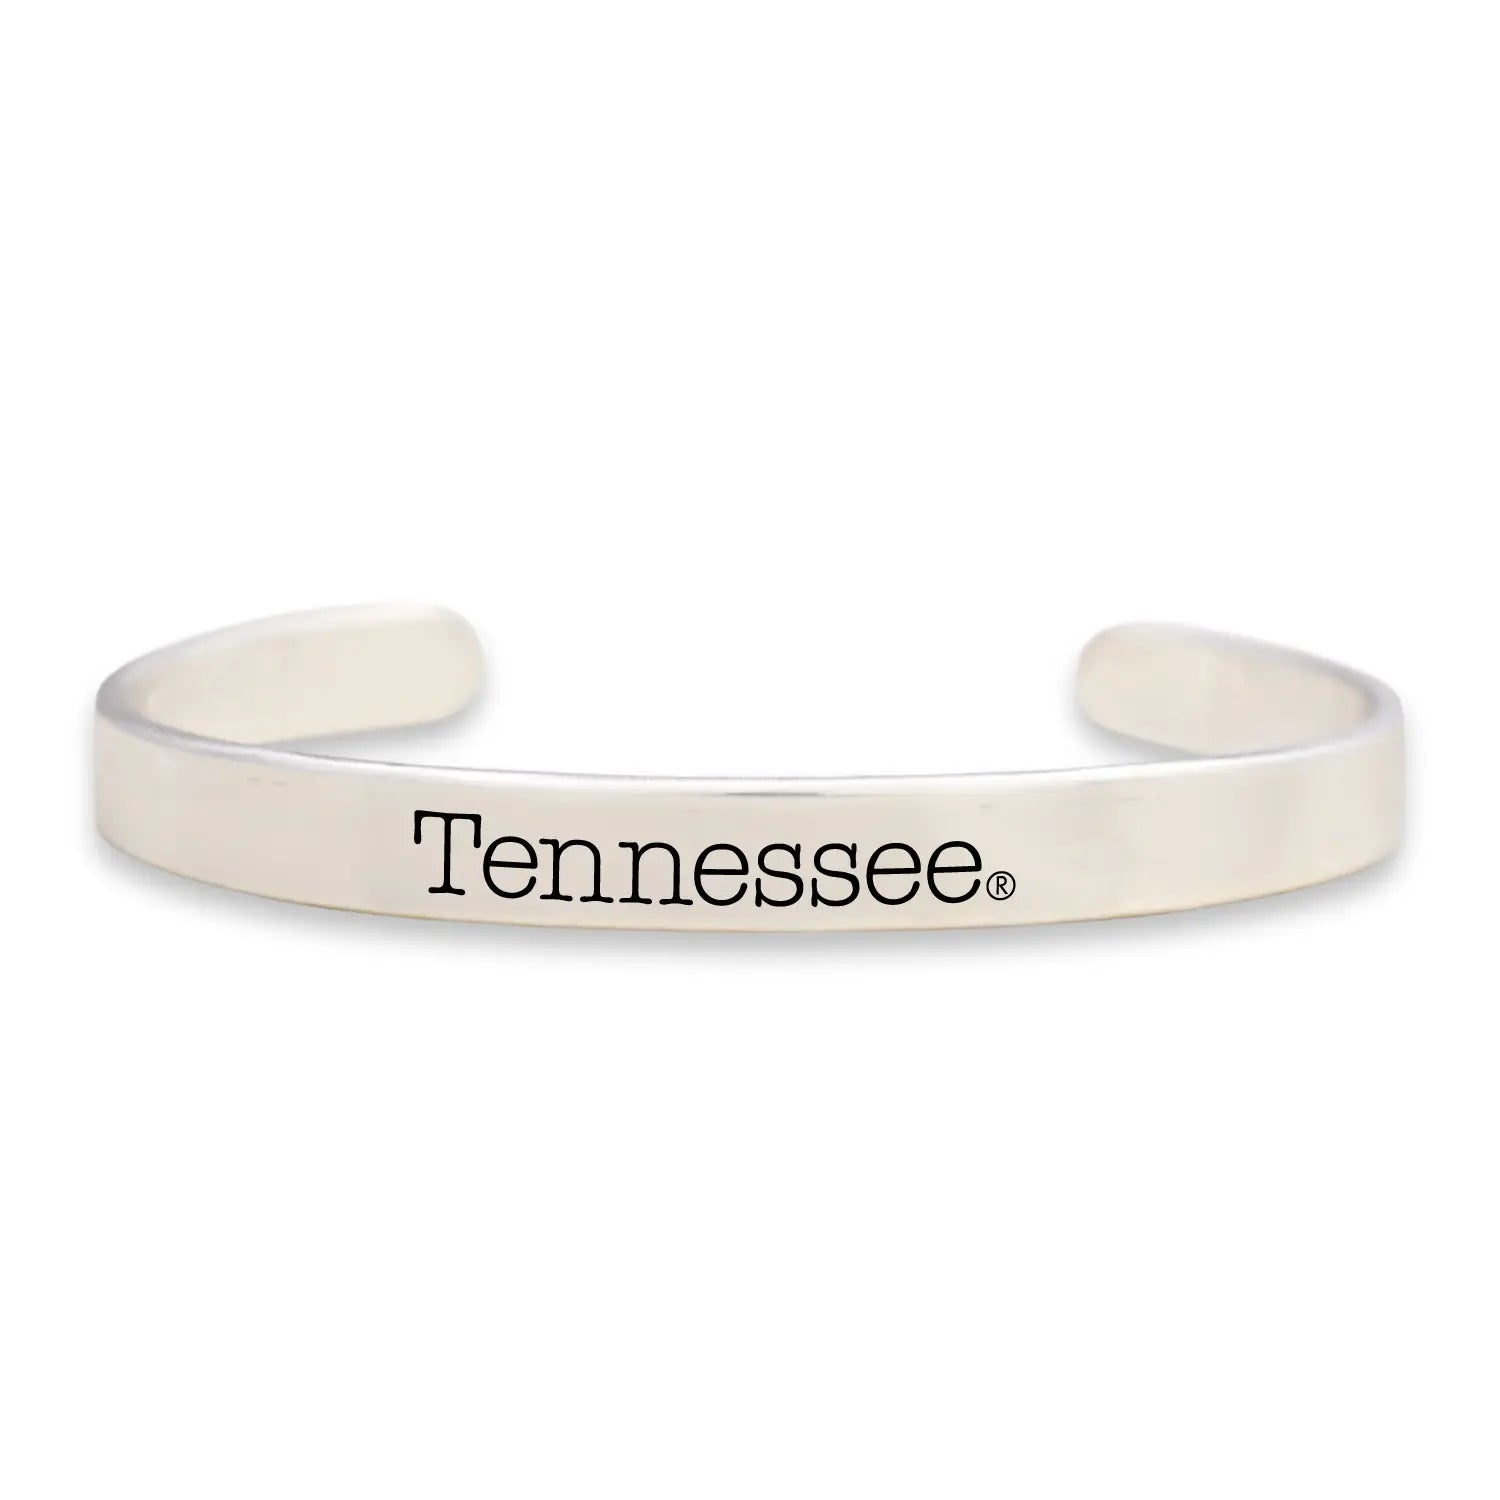 Tennessee silver Cuff